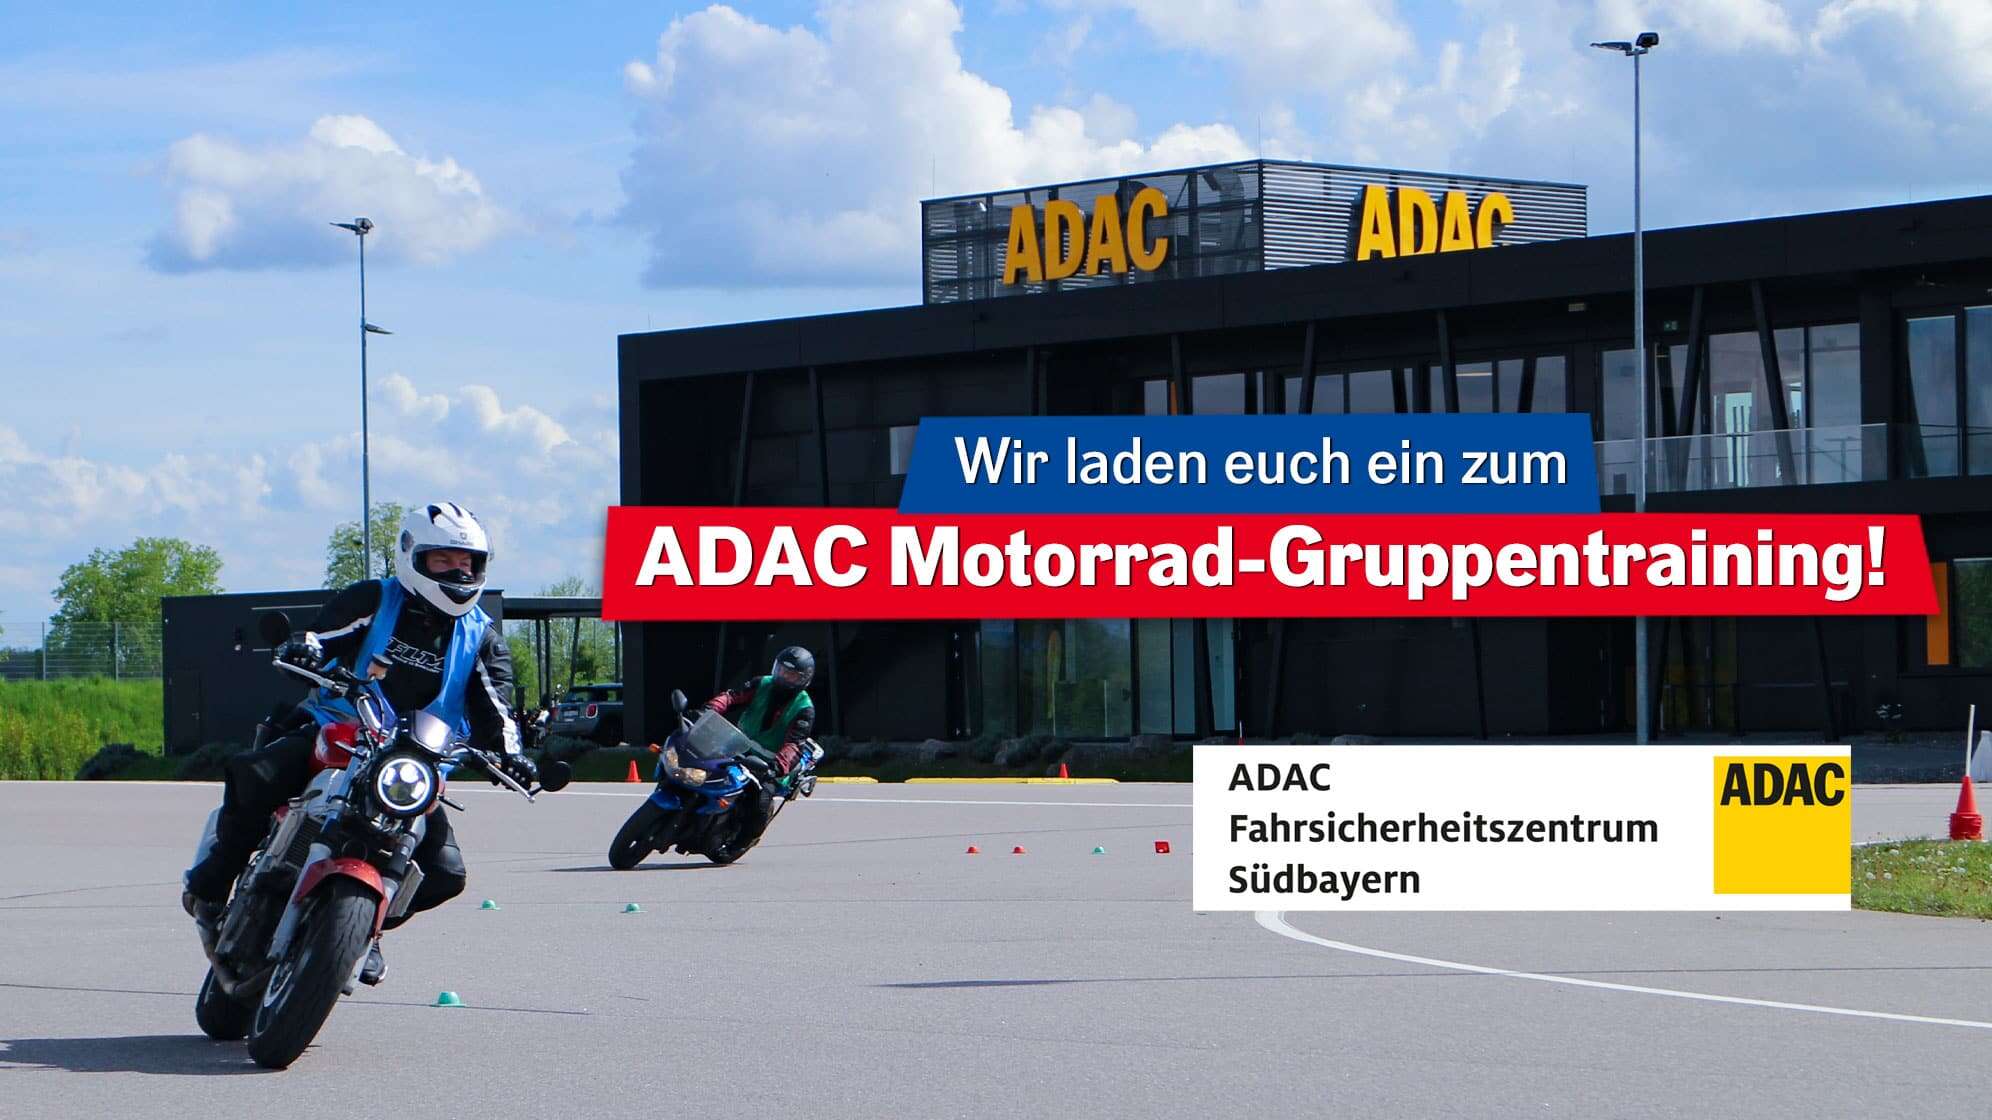 Bild von zwei Motorrädern auf dem Trainingsparcours vor einem Gebäude des ADAC Fahrsicherheitszentrum Südbayern, dazu der Text: Wir laden euch ein zum ADAC Motorrad-Gruppentraining! und das Logo des ADAC Fahrsicherheitszentrum Südbayern